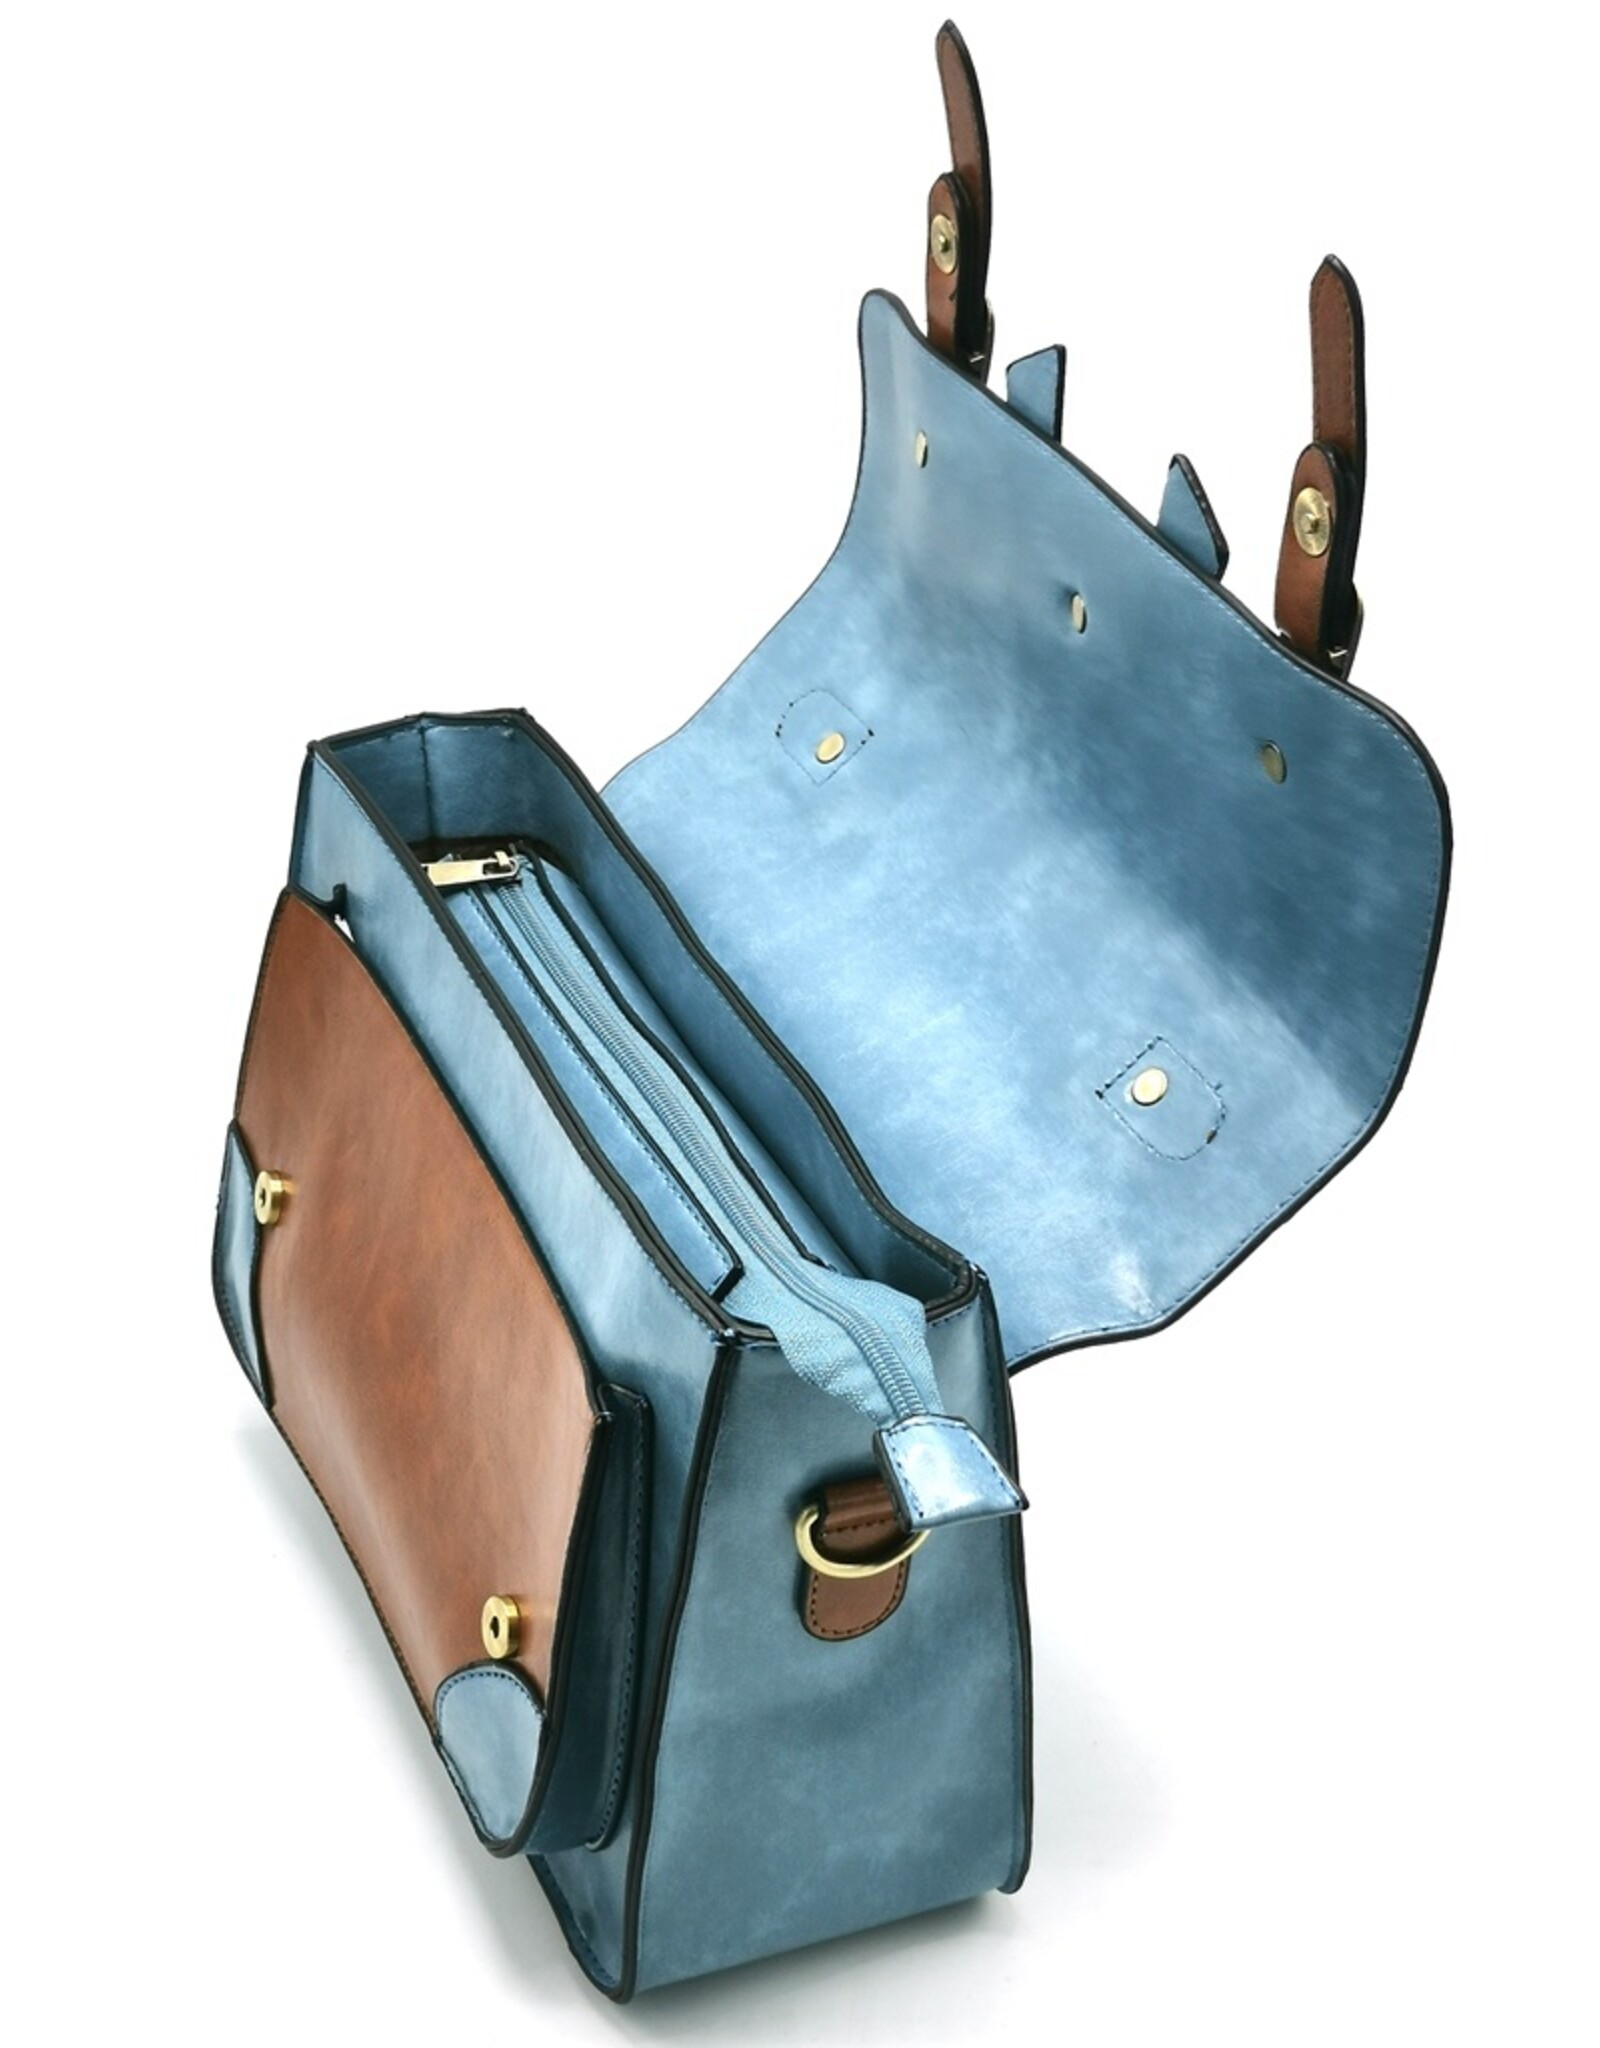 Banned Retro tassen Vintage tassen -  Banned Retro handtas met gespen en strik (lichtblauw)